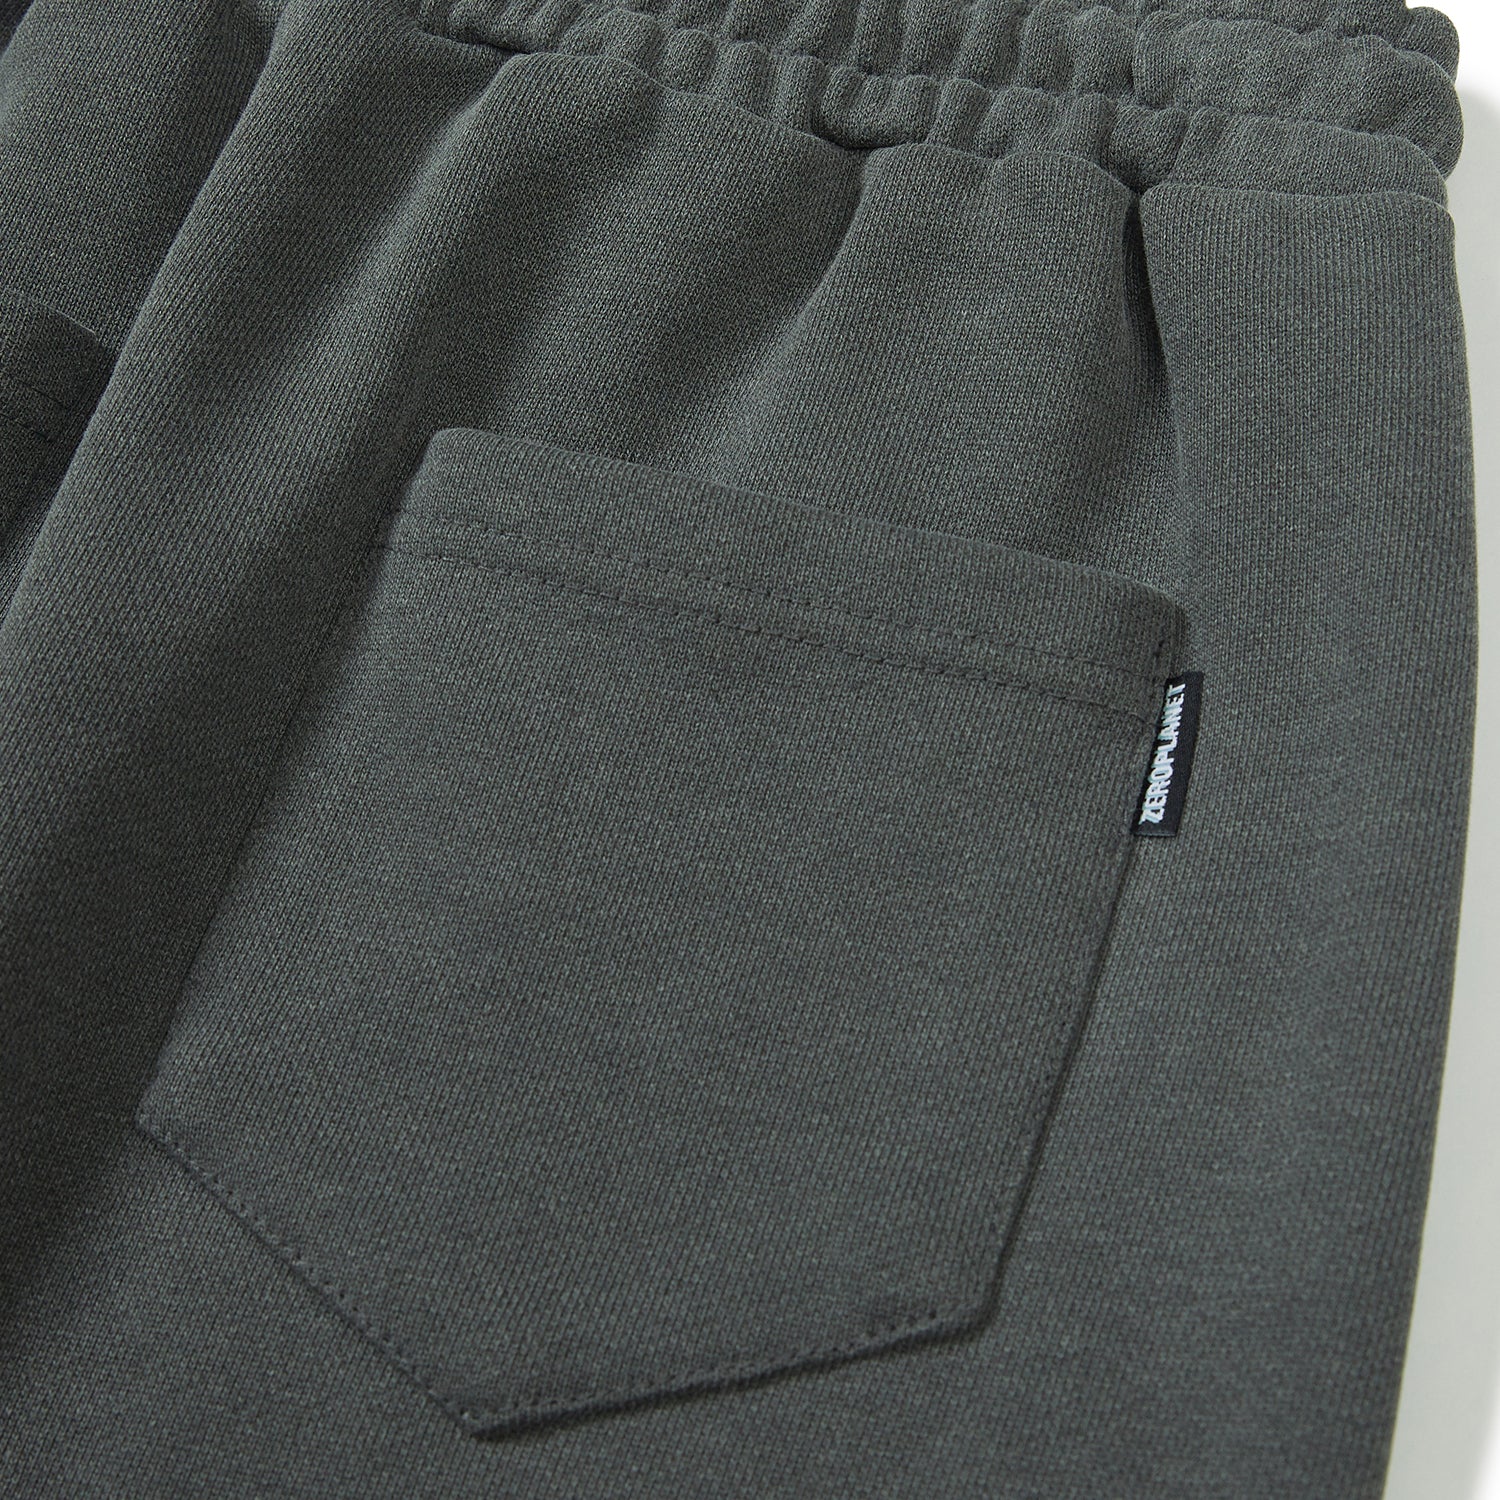 ピグメントヘビーロングスカート / Pigment Heavy Long Skirt [CHARCOAL]